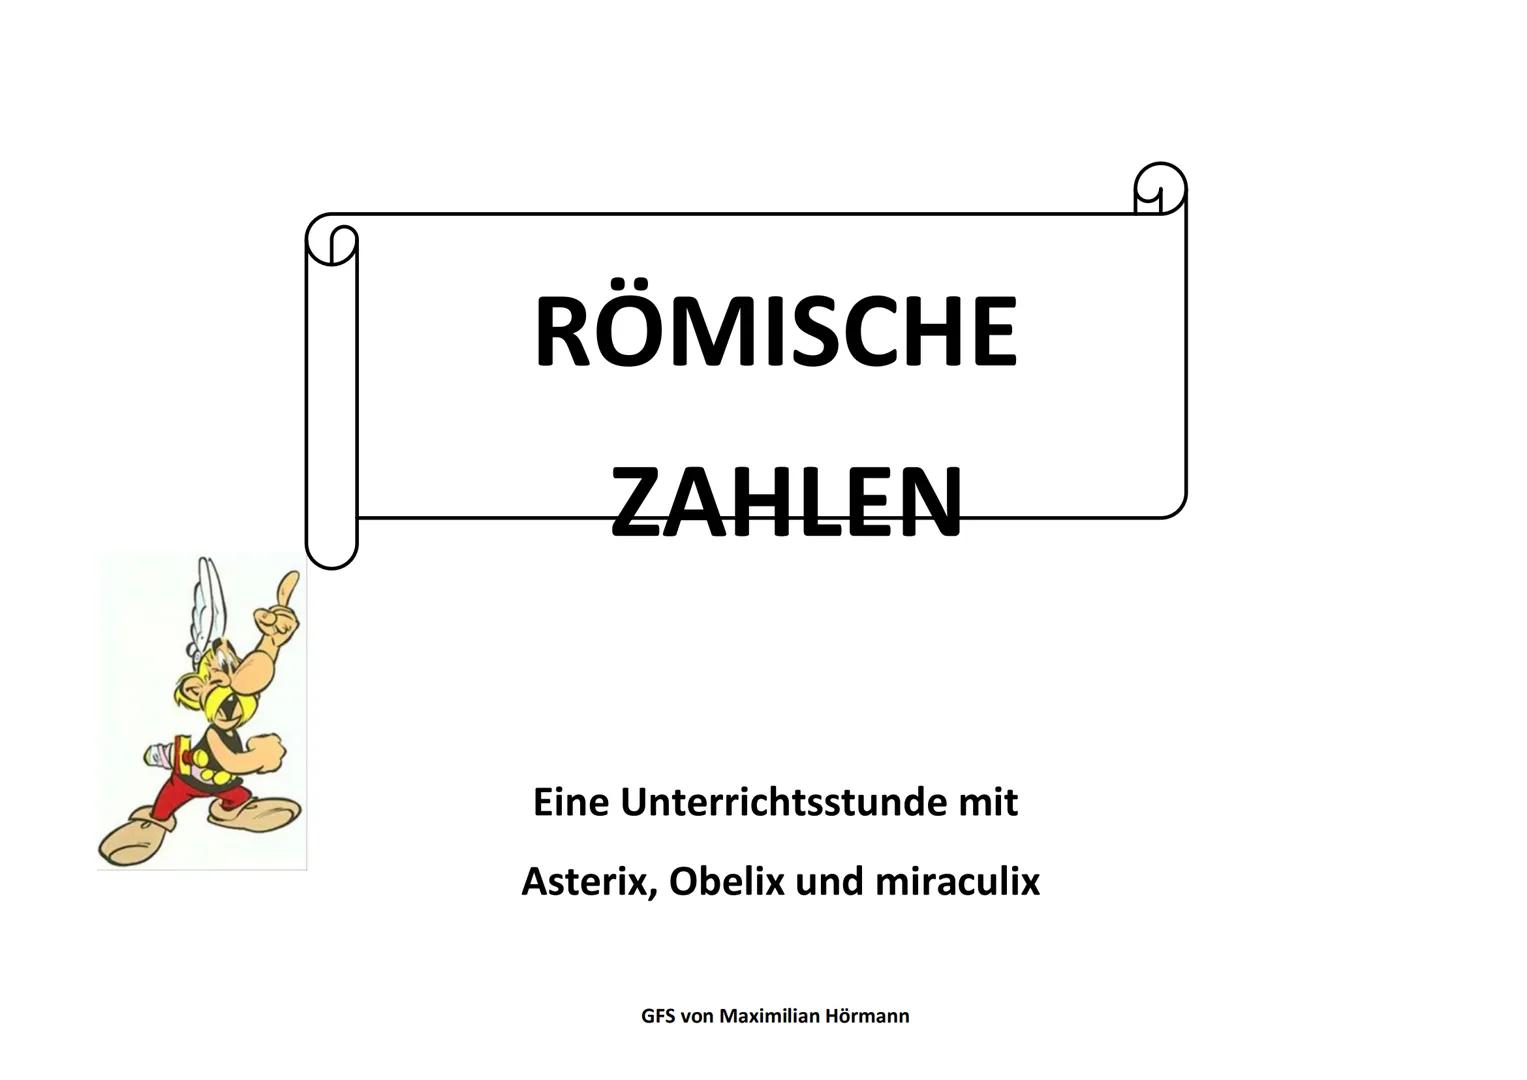 Römische Zahlen
Eine Unterrichtstunde mit Asterix, Obelix und Miraculix
GFS Maximilian Hörmann 10c am 05.06.2018
Einstieg in die Stunde (ca.